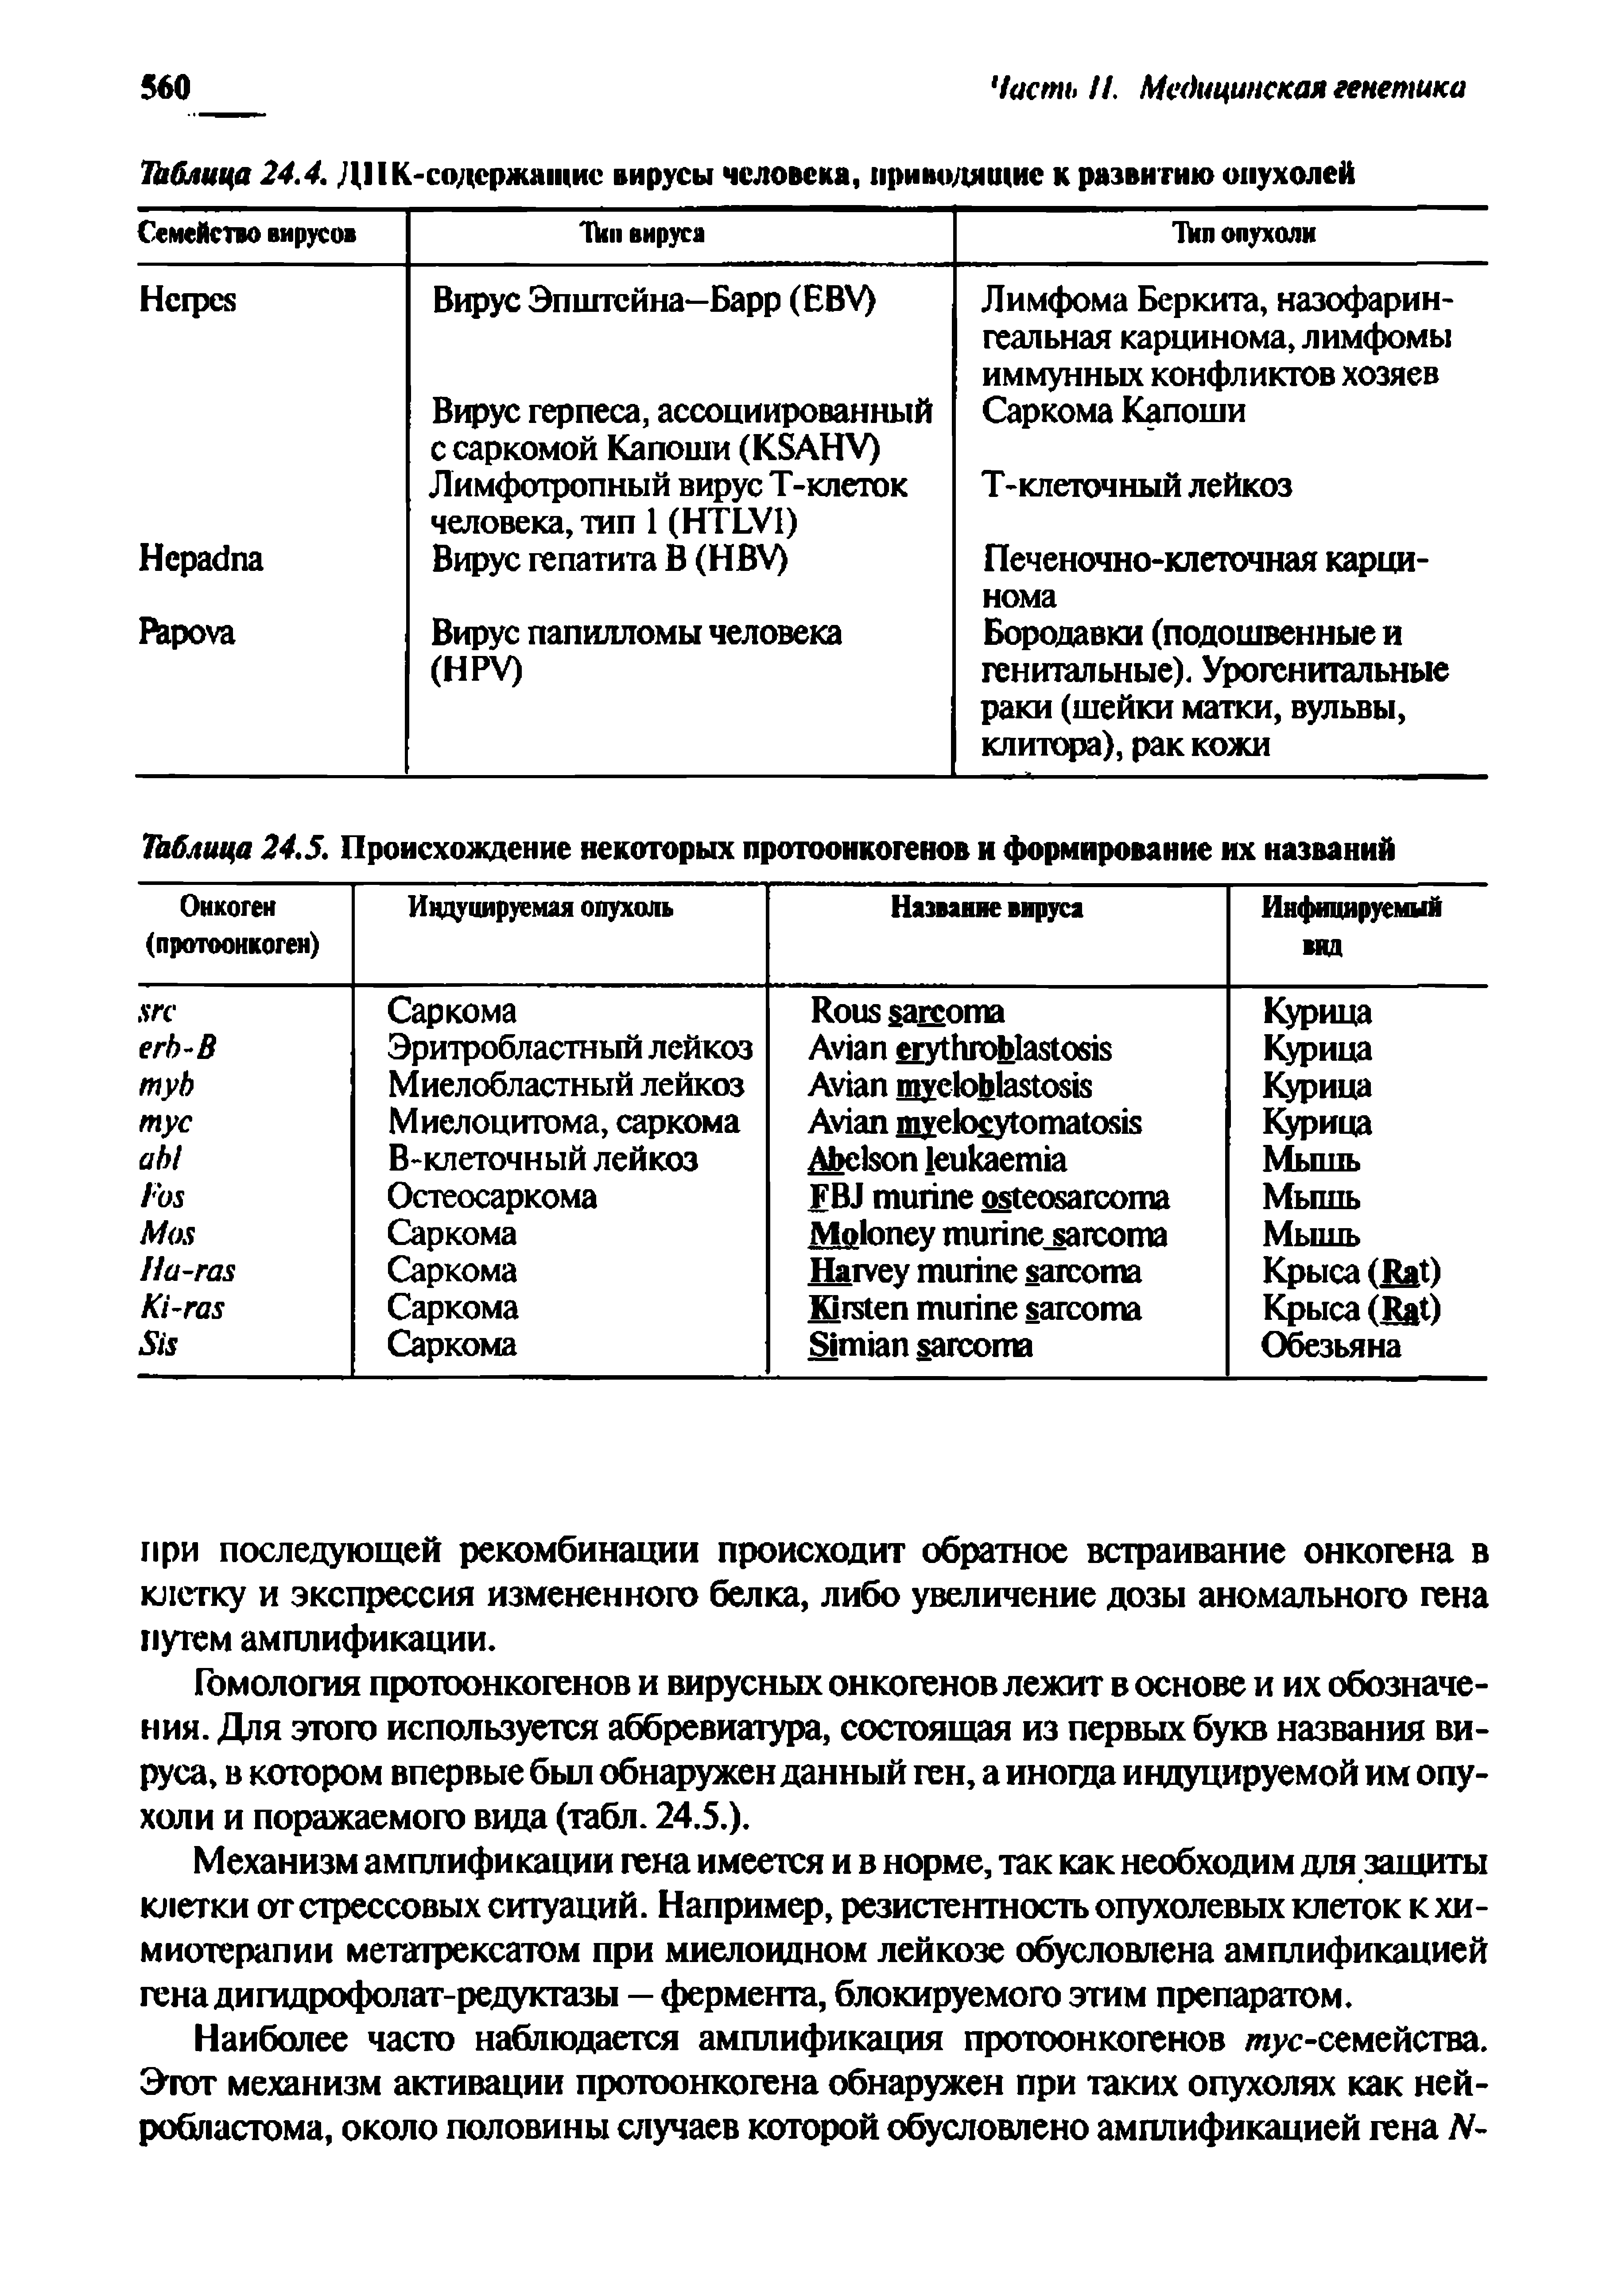 Таблица 24.5. Происхождение некоторых протоонкогенов и формирование их названий...